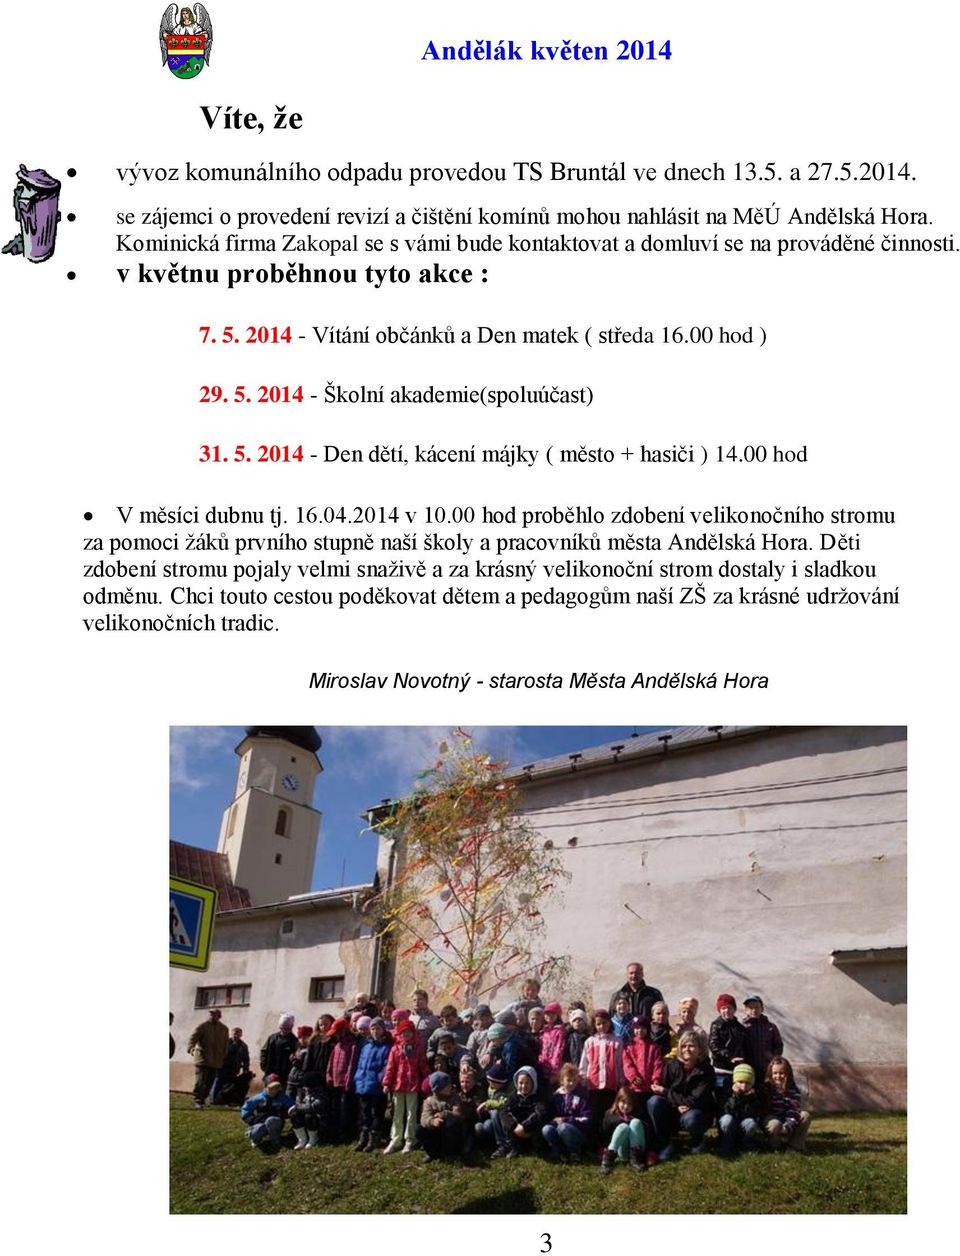 5. 2014 - Den dětí, kácení májky ( město + hasiči ) 14.00 hod V měsíci dubnu tj. 16.04.2014 v 10.